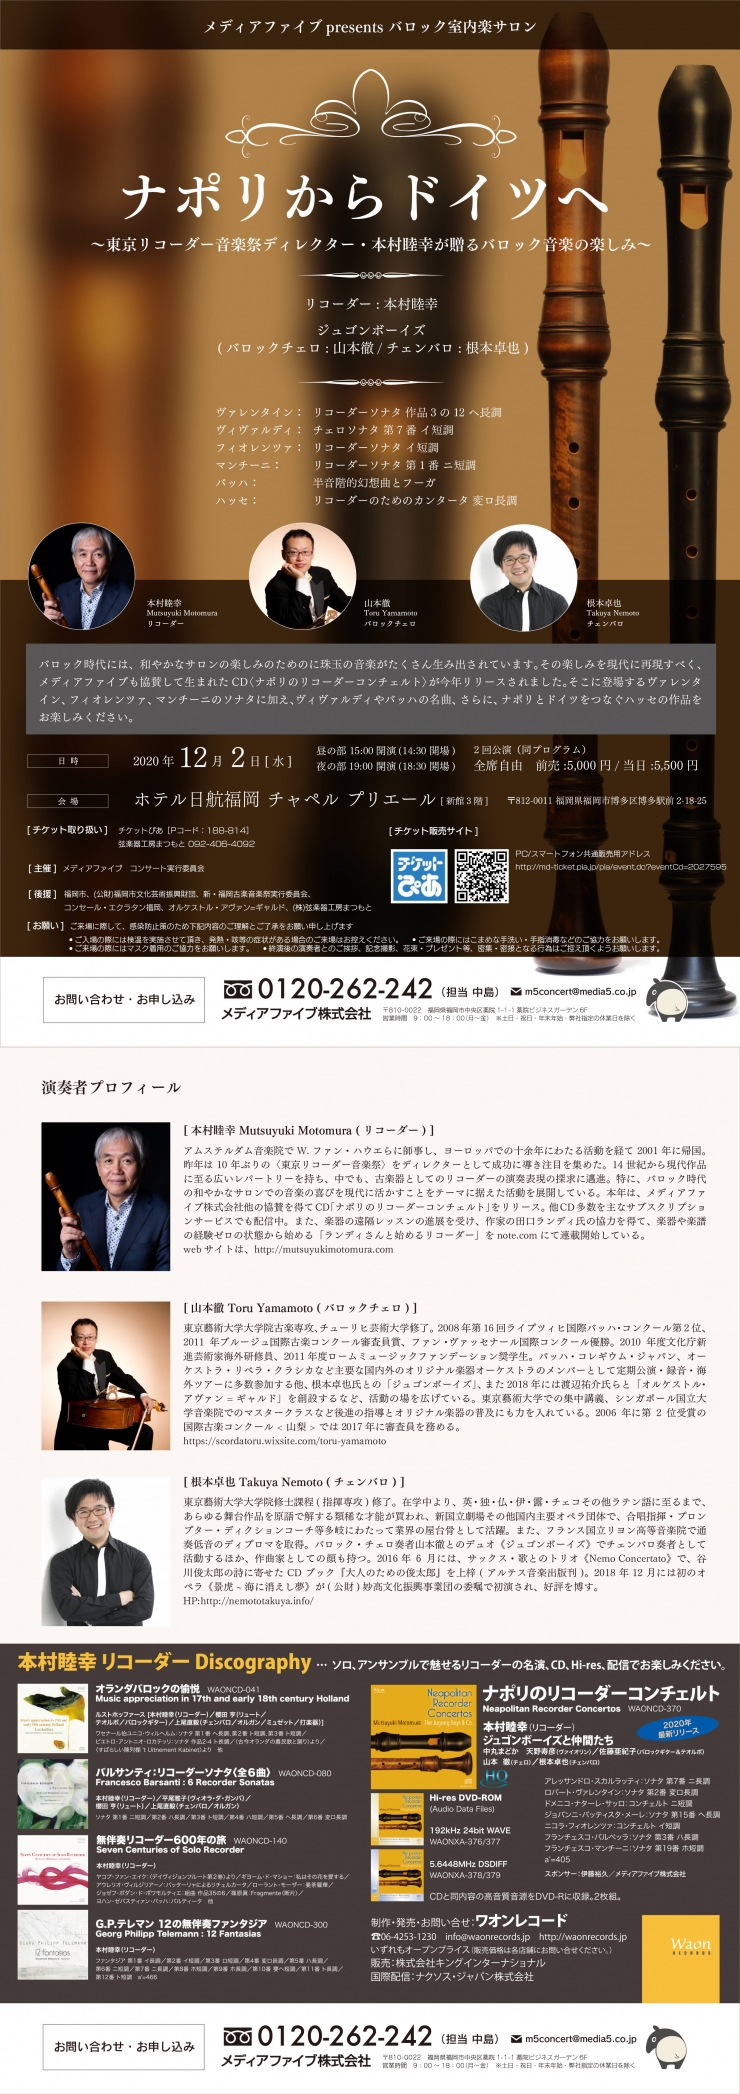 ナポリからドイツへ～東京リコーダー音楽祭ディレクター・本村睦幸が贈るバロック音楽の楽しみ～